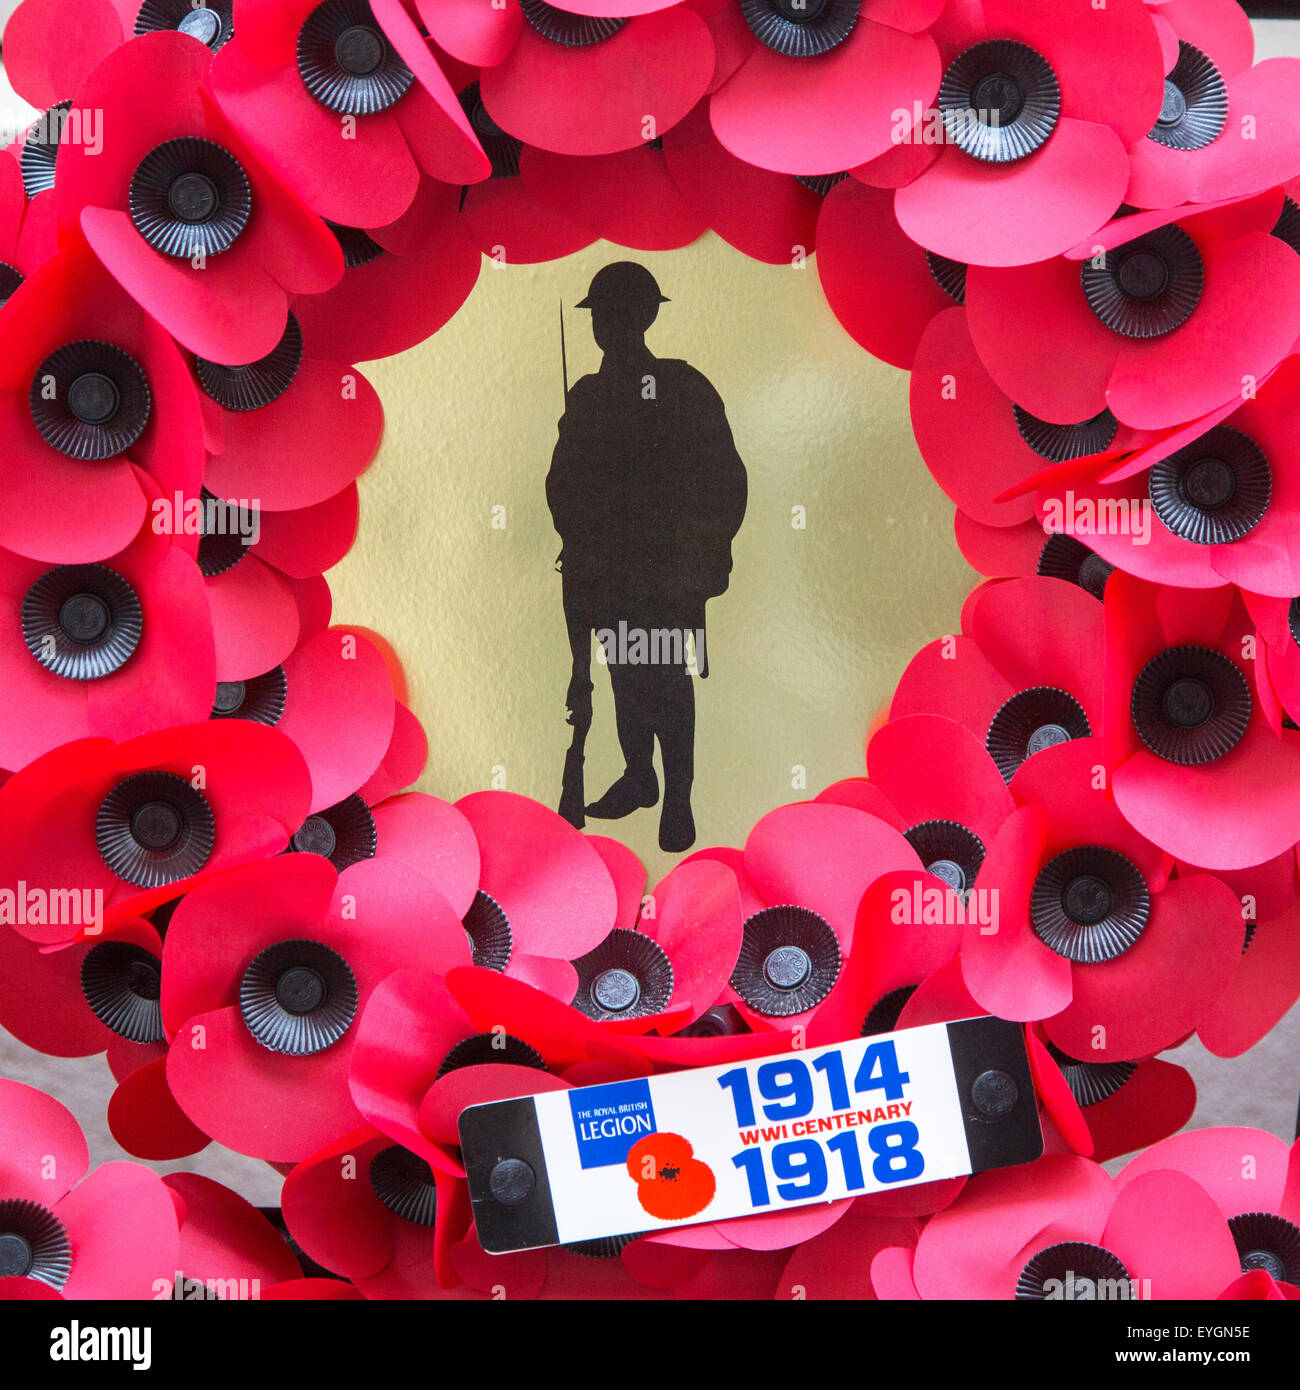 British ghirlanda di papavero per la prima guerra mondiale un soldato durante la commemorazione del centenario della prima guerra mondiale Foto Stock